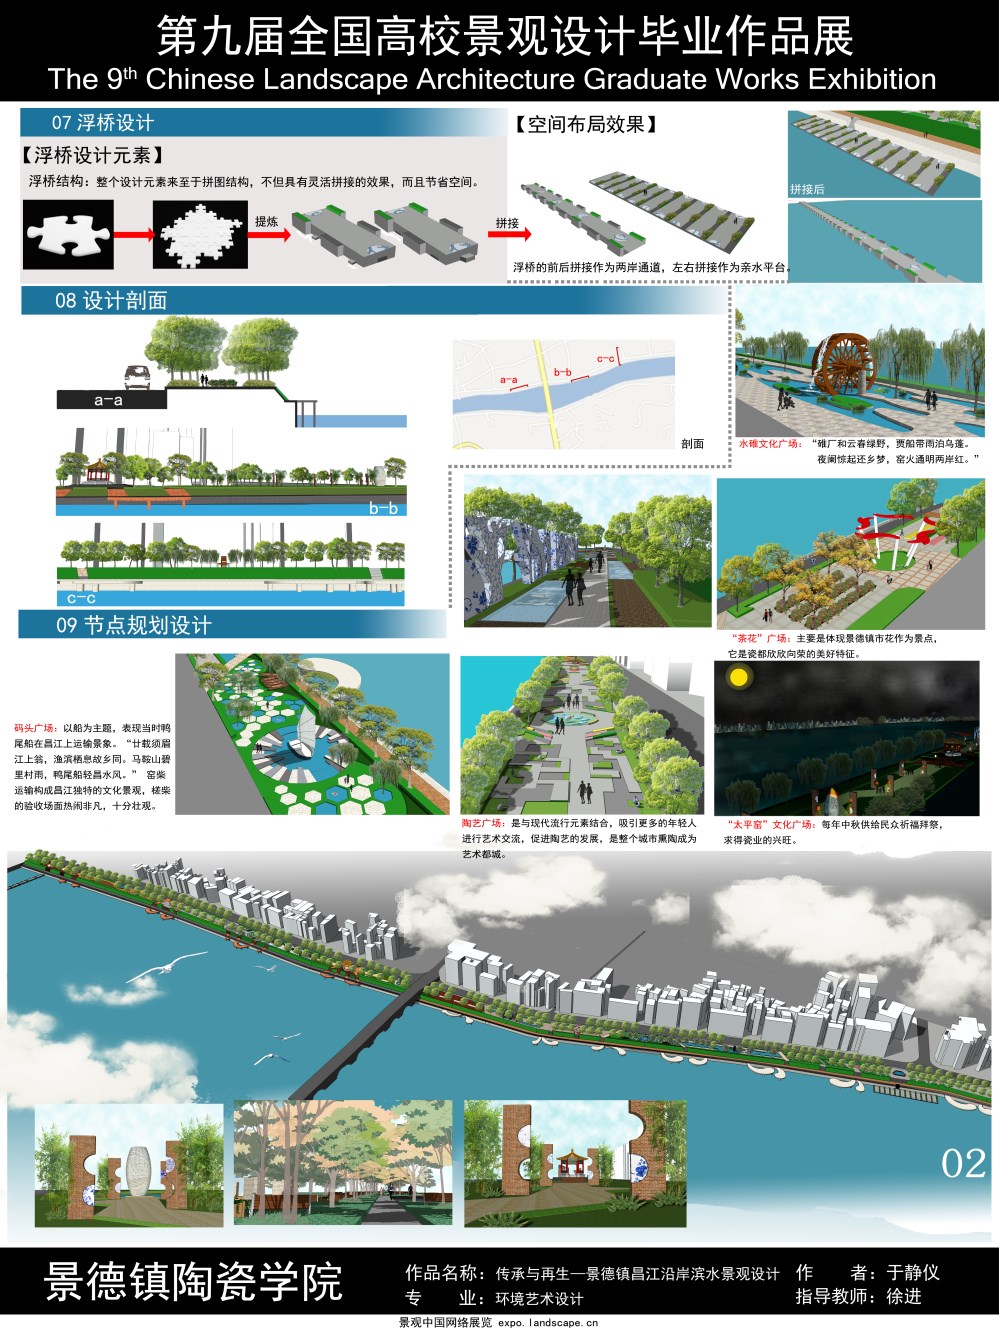 传承与再生——景德镇昌江沿岸滨水景观设计-2